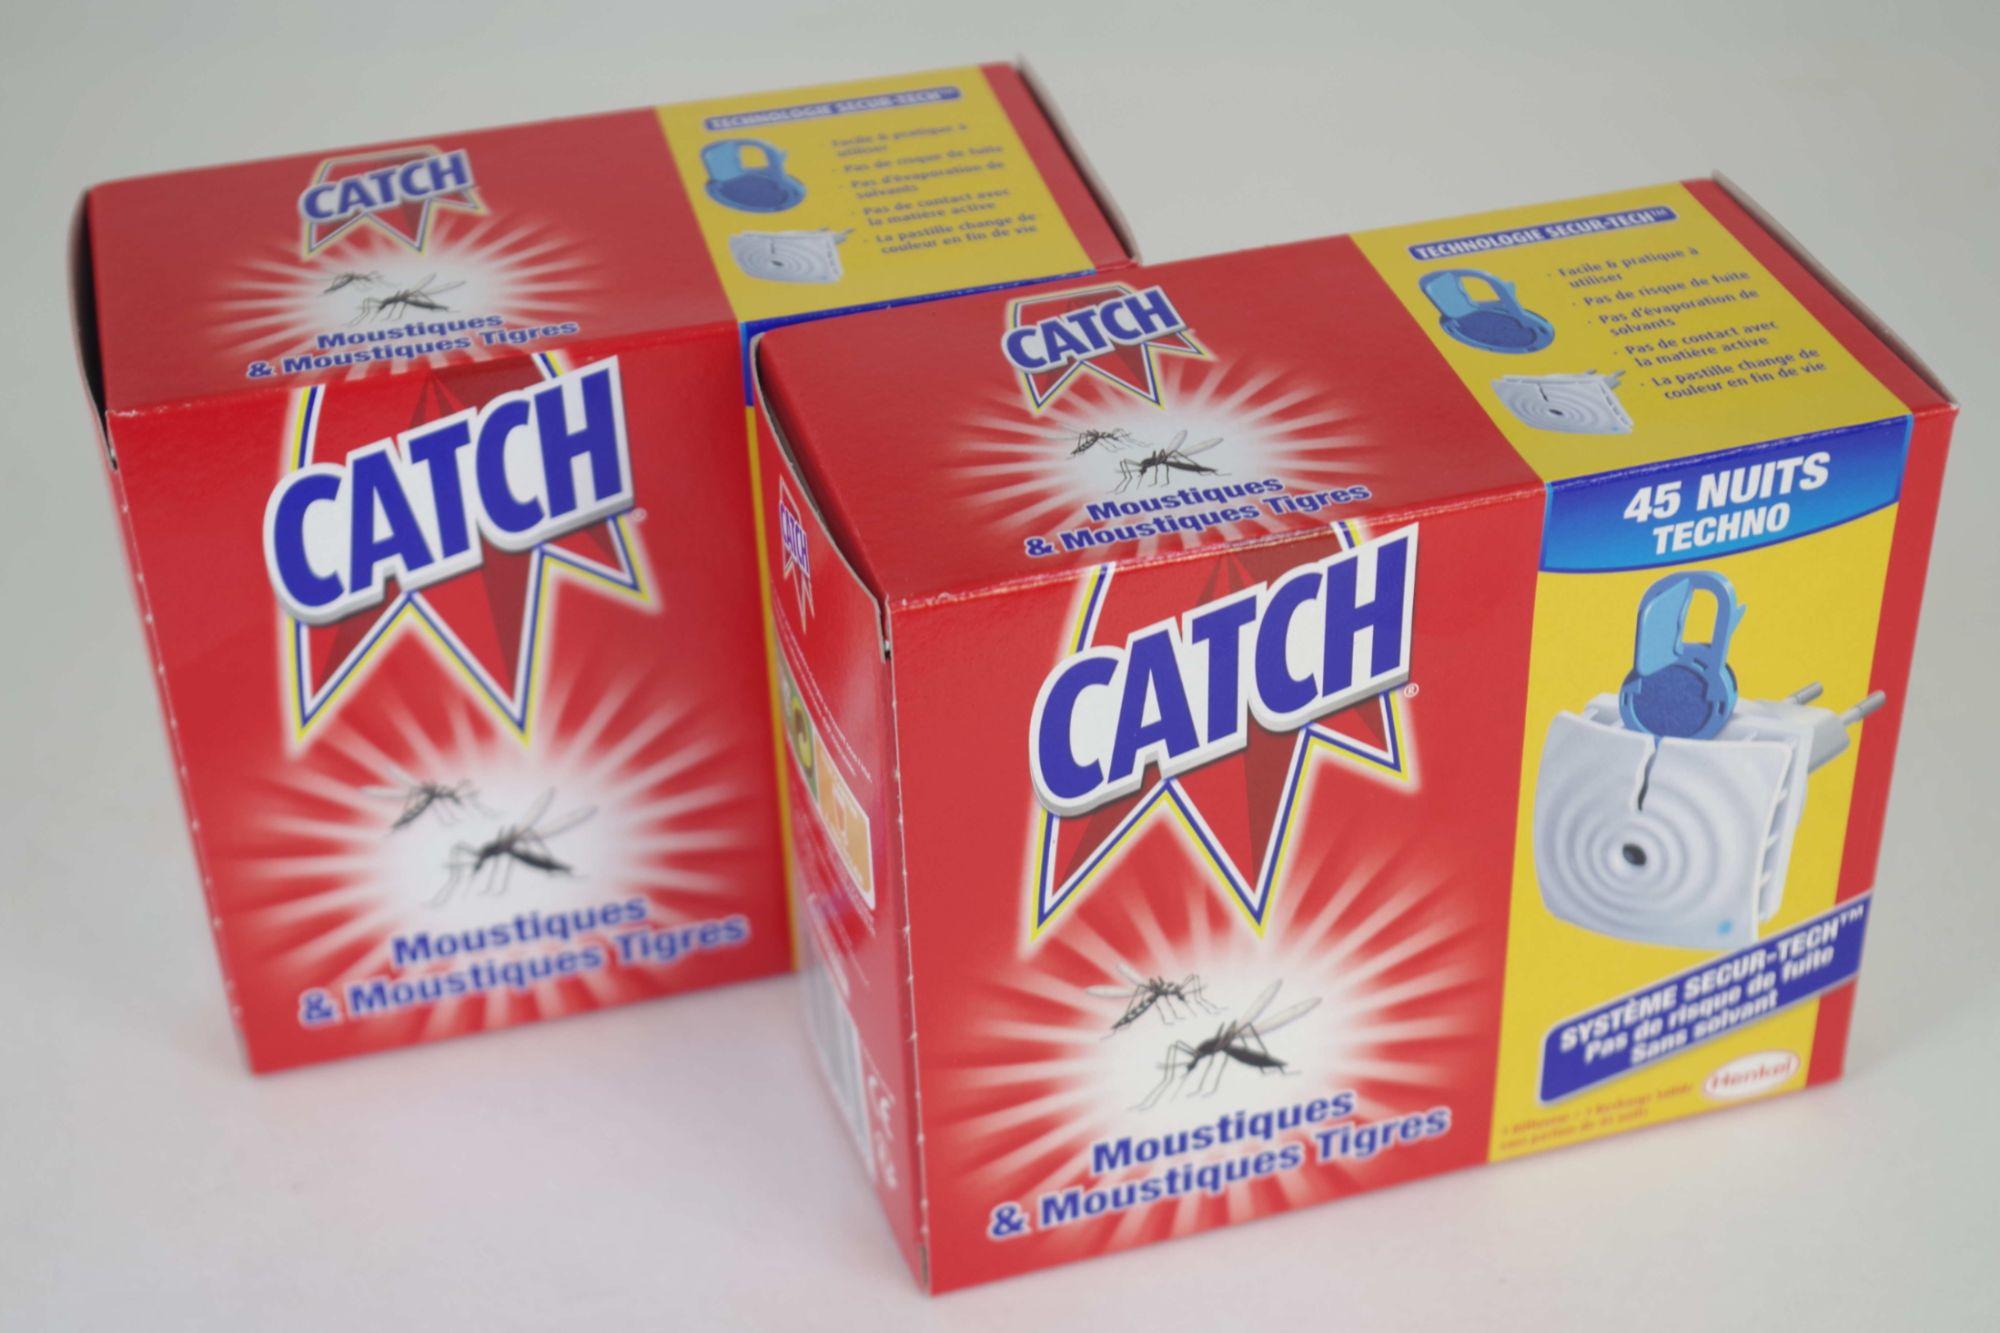 CATCH Techno Prise anti-moustique diffuseur électrique + 1 recharge 45  nuits EXP 03/2018